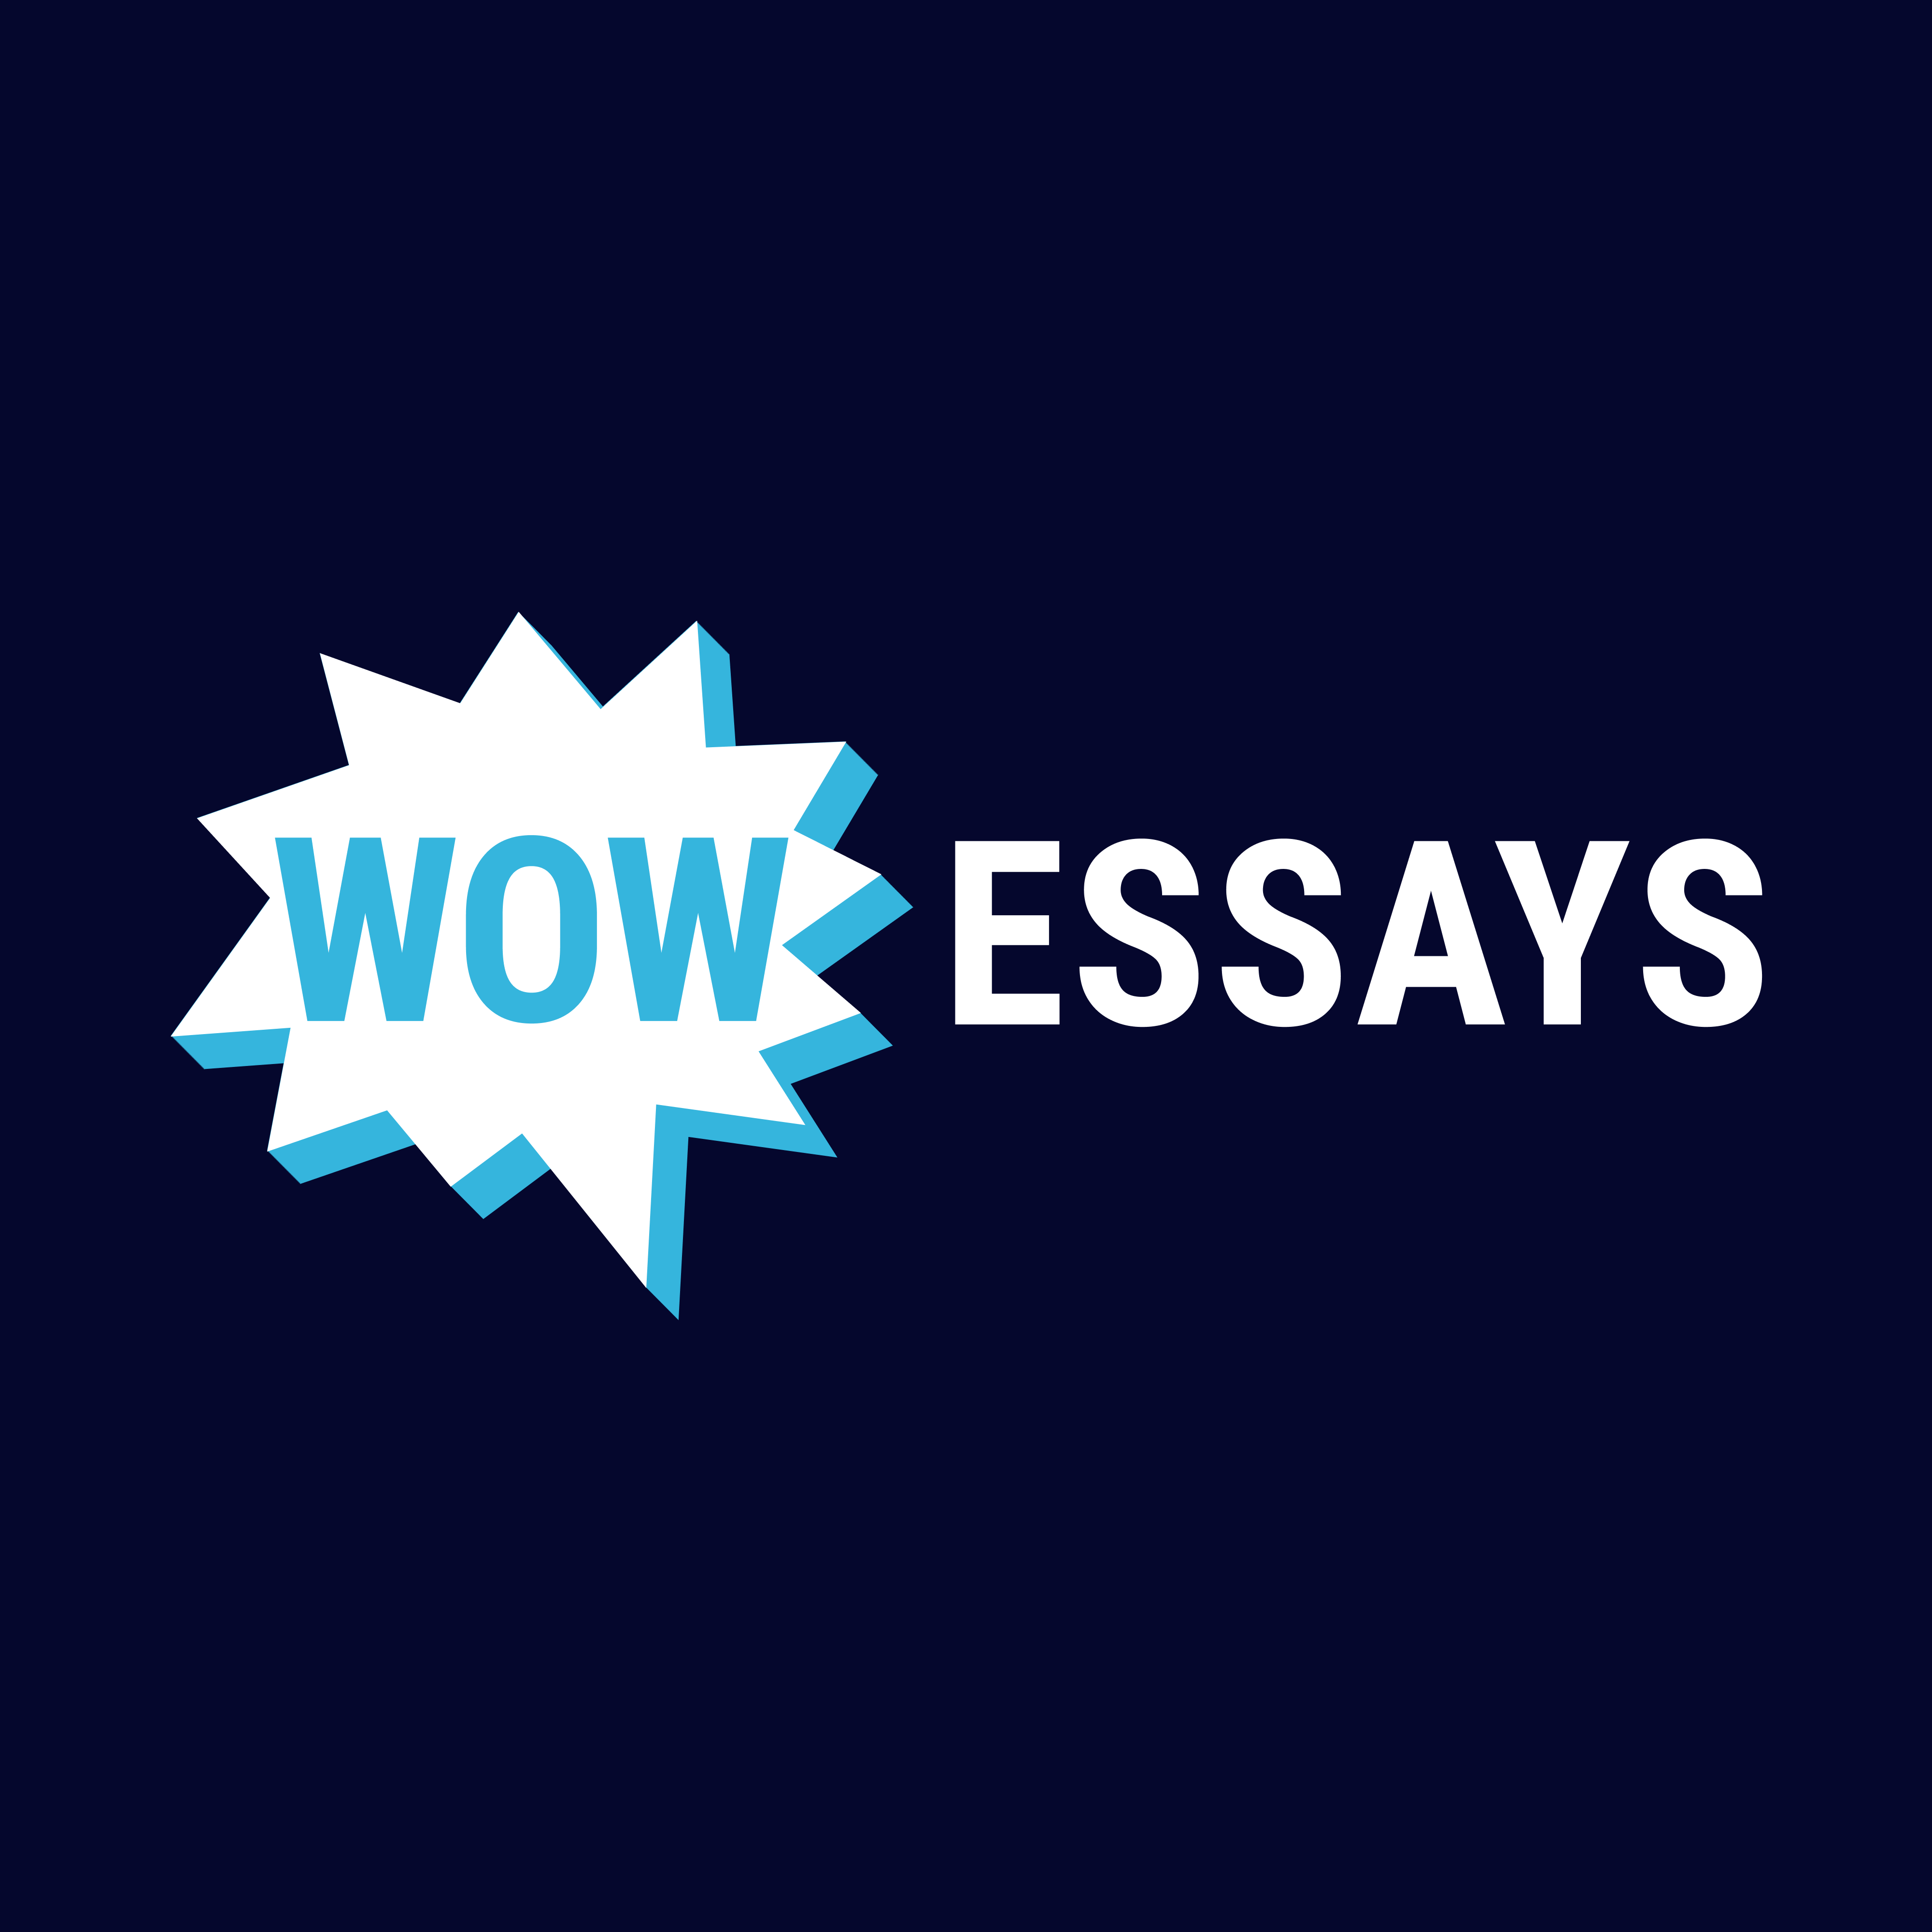 essay database